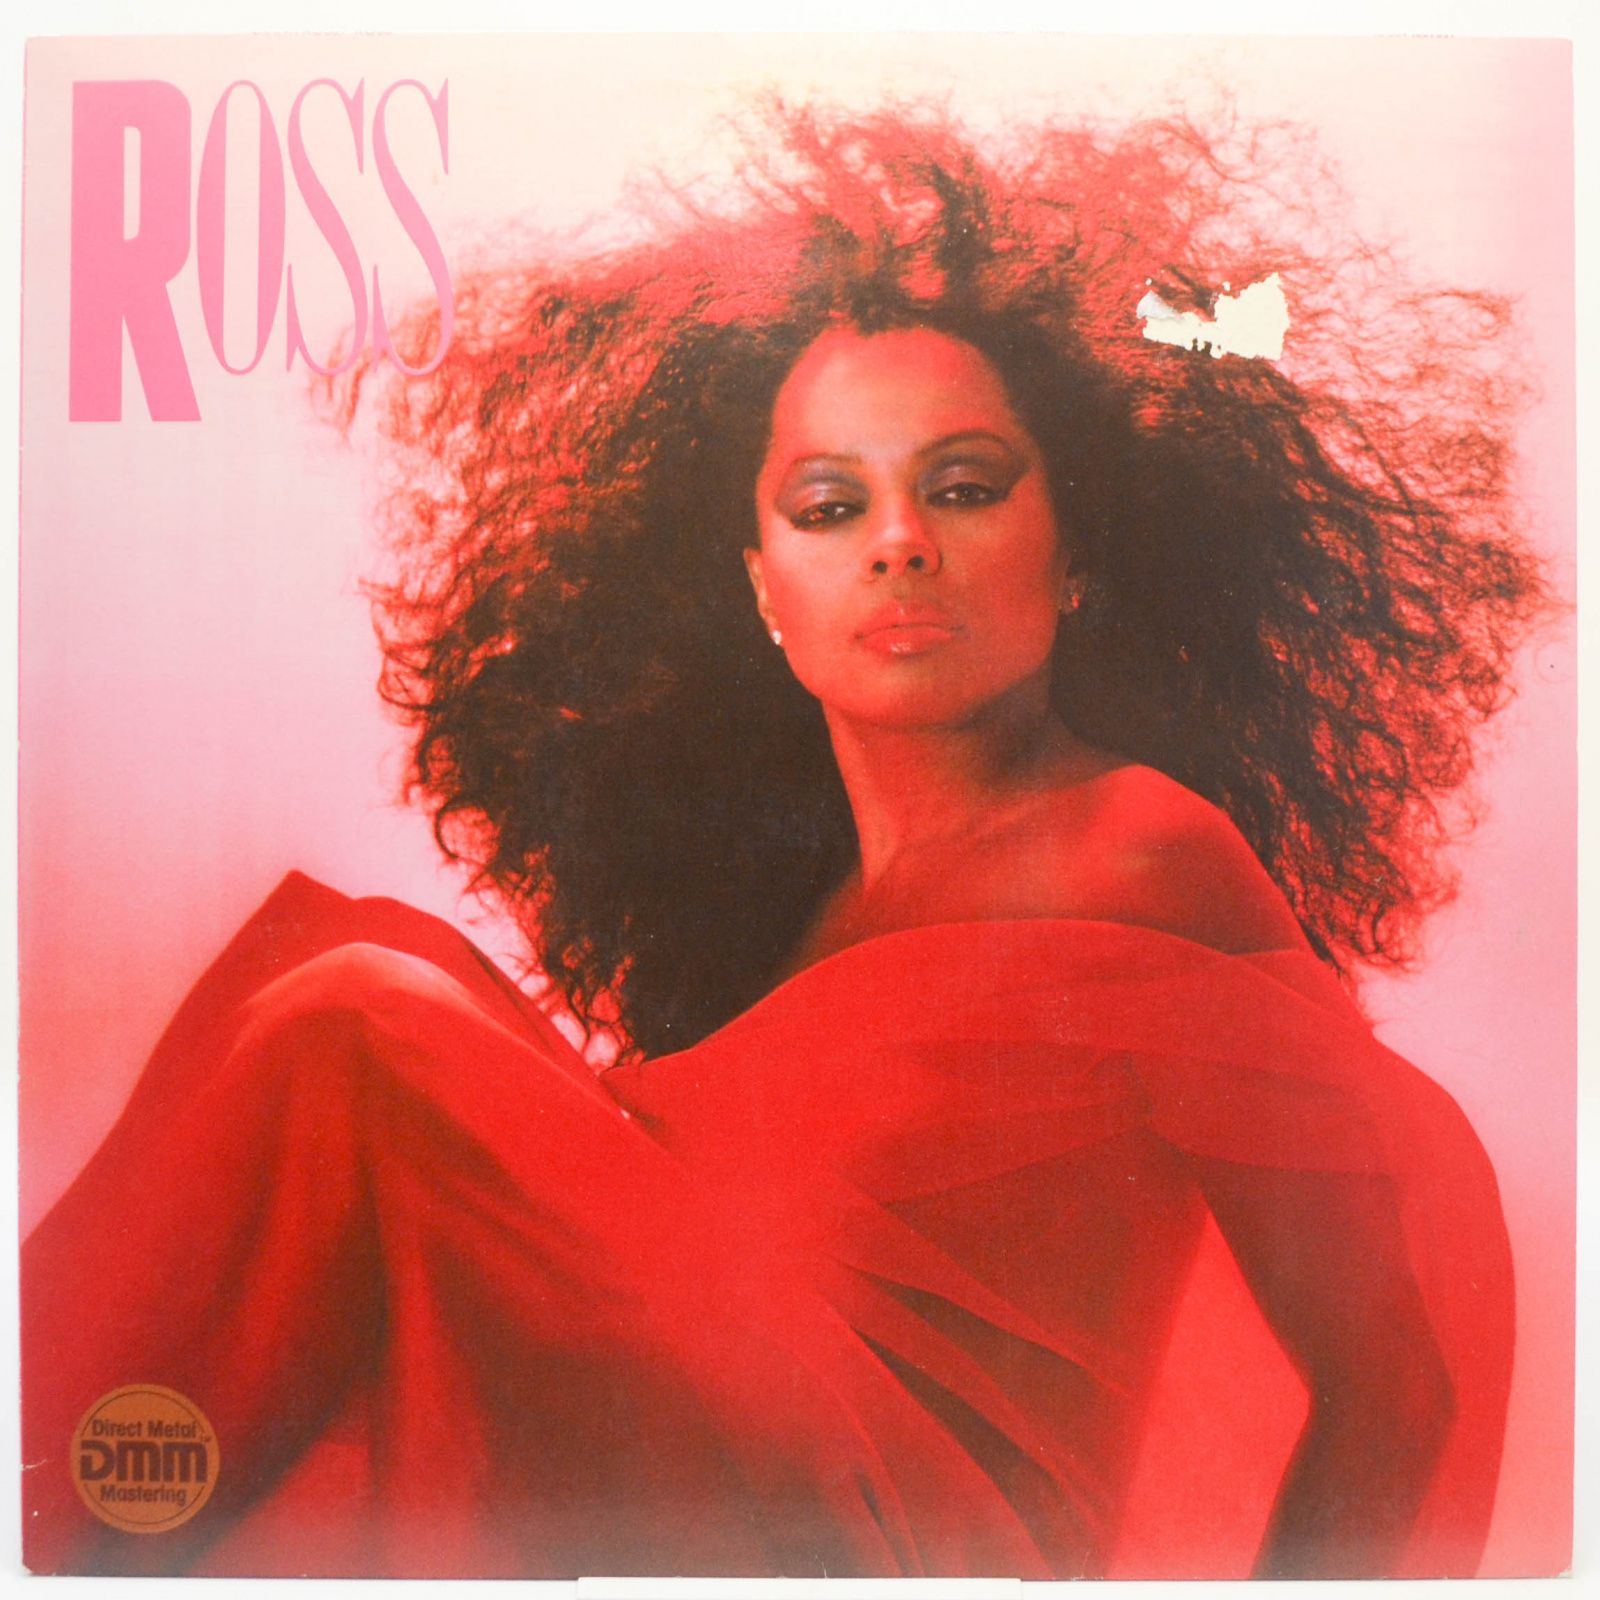 Ross, 1983